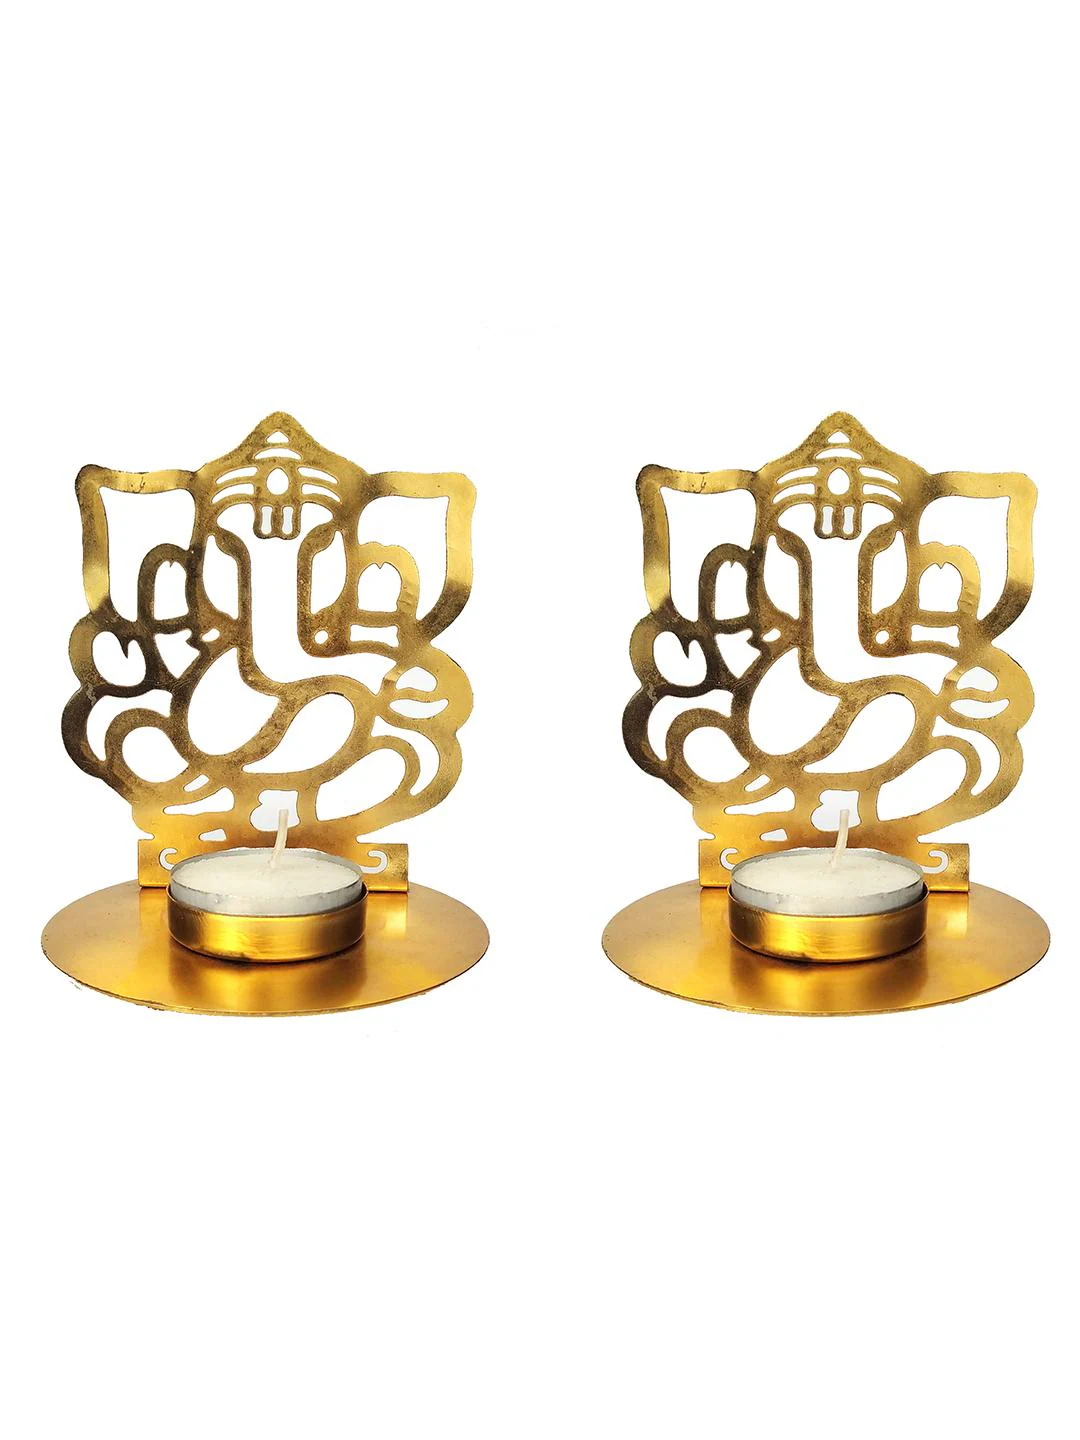 Itiha Lakshmi Ganesh Tea light candle holder Diya Golden 2.5 3 inches